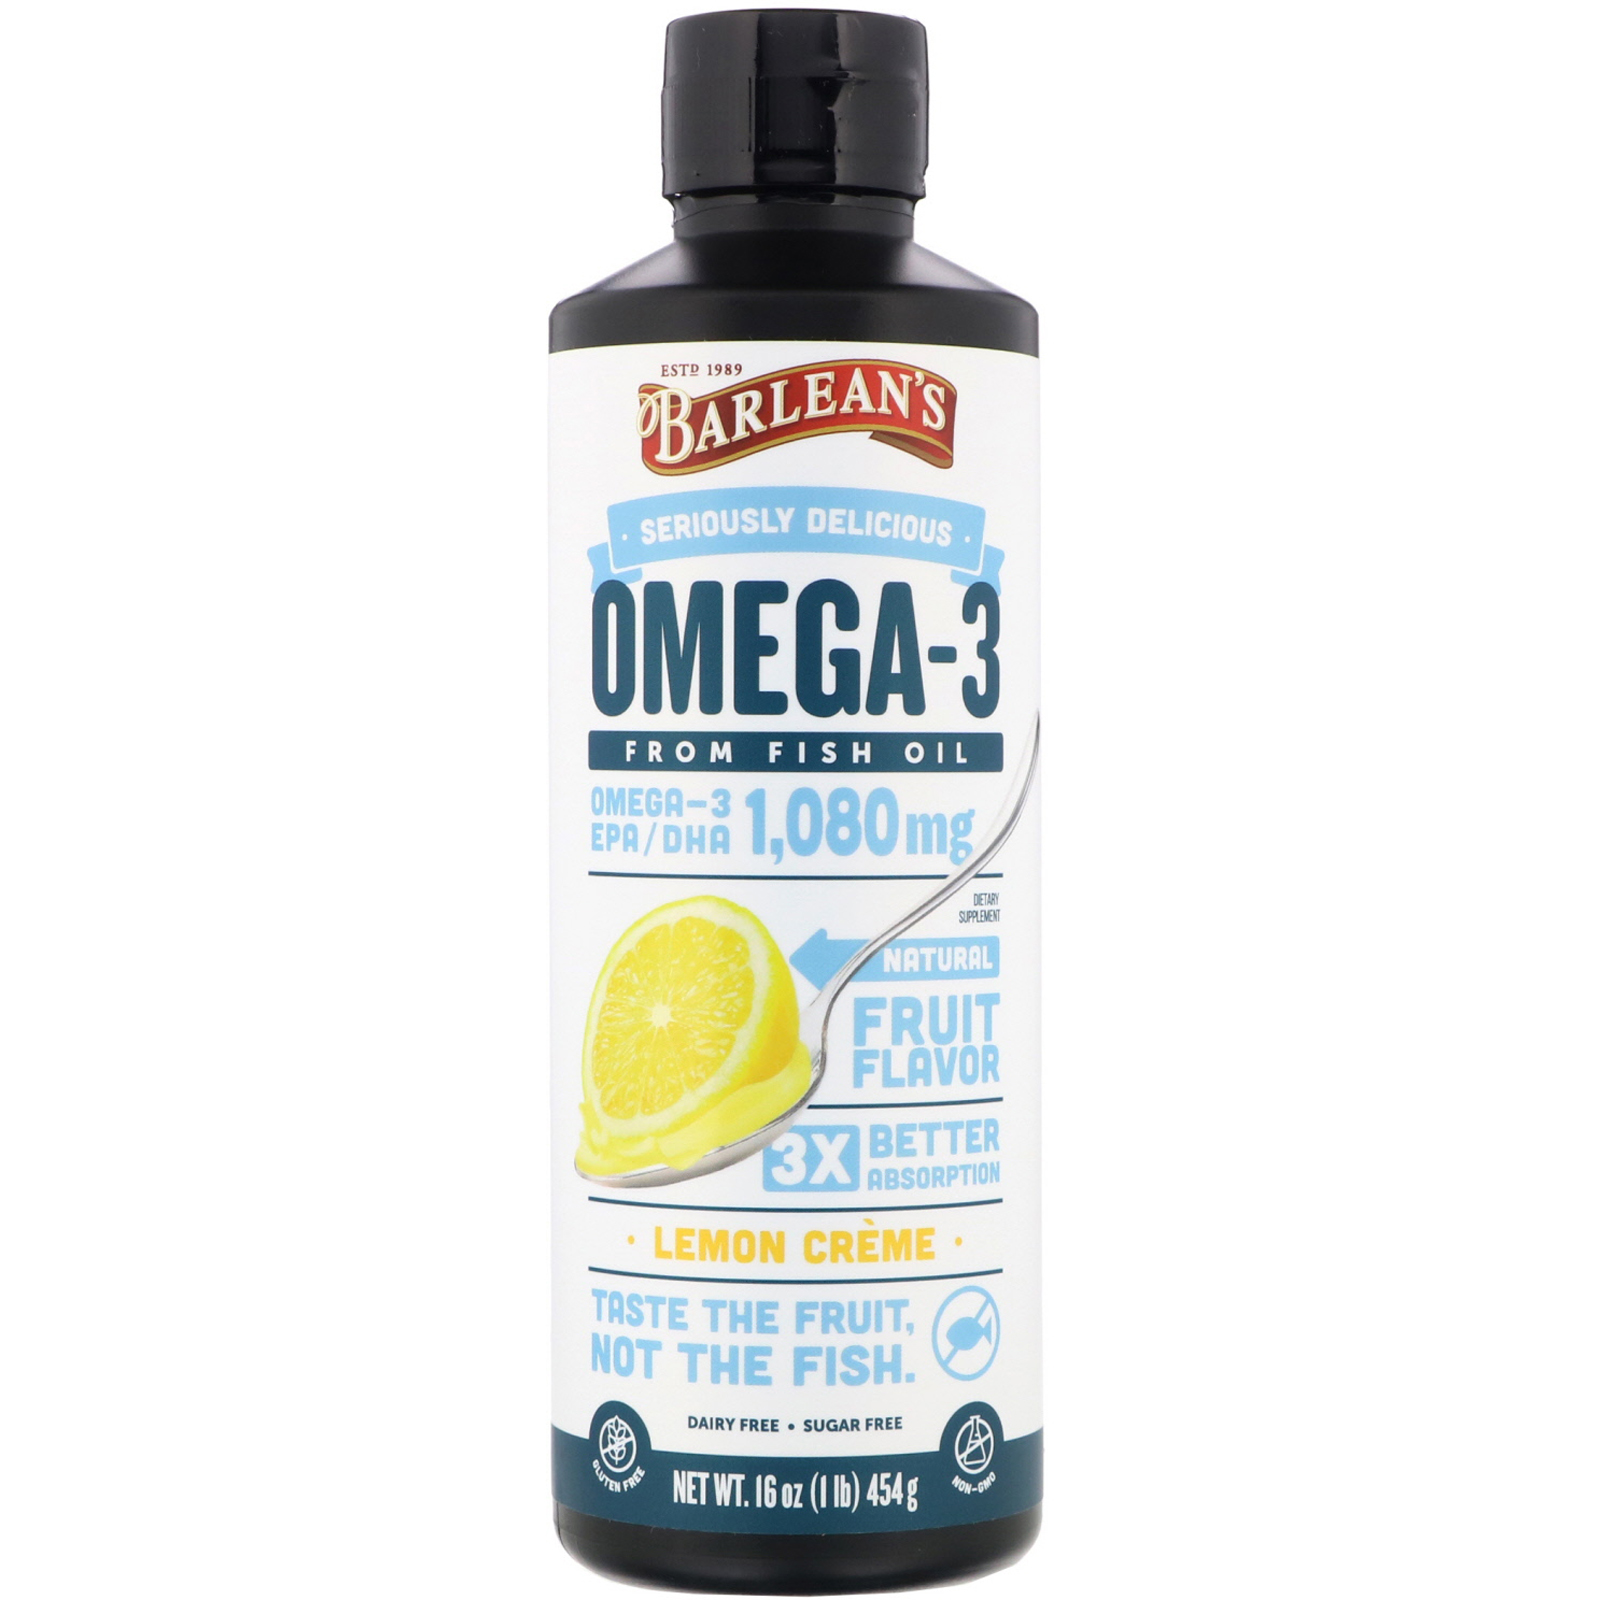 Omega-3, Fish Oil, Lemon Creme, oz (454 g)